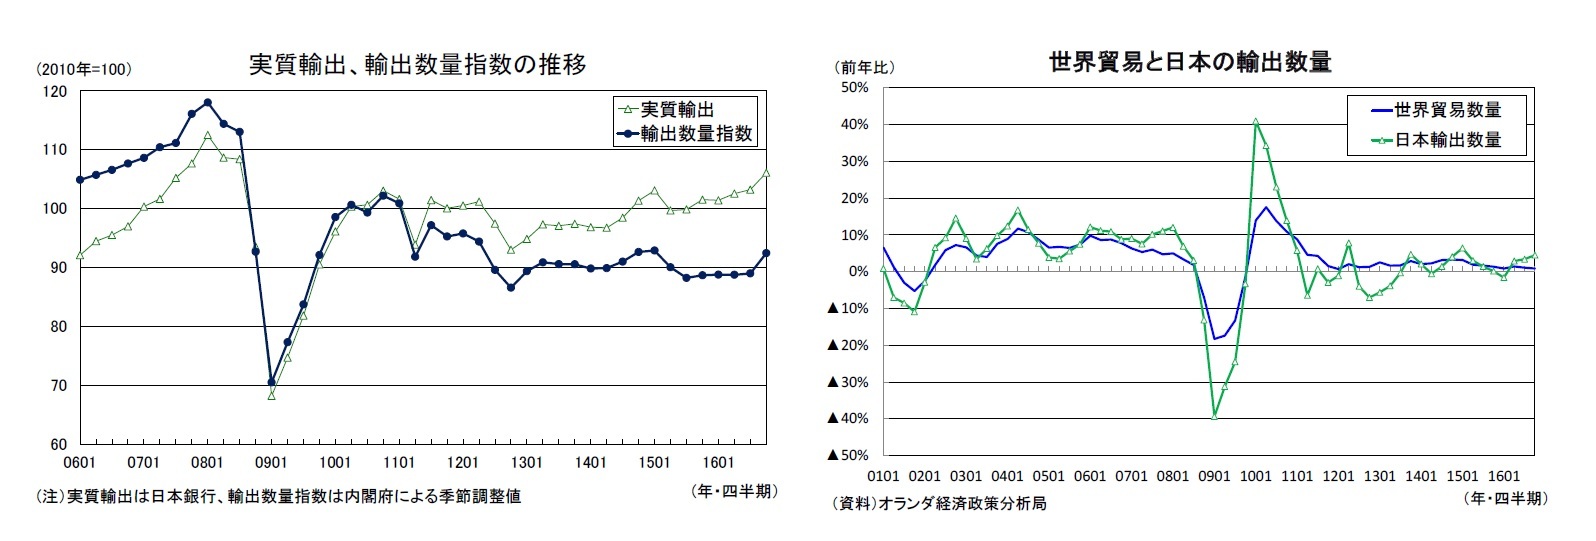 実質輸出、輸出数量指数の推移/世界貿易と日本の輸出数量